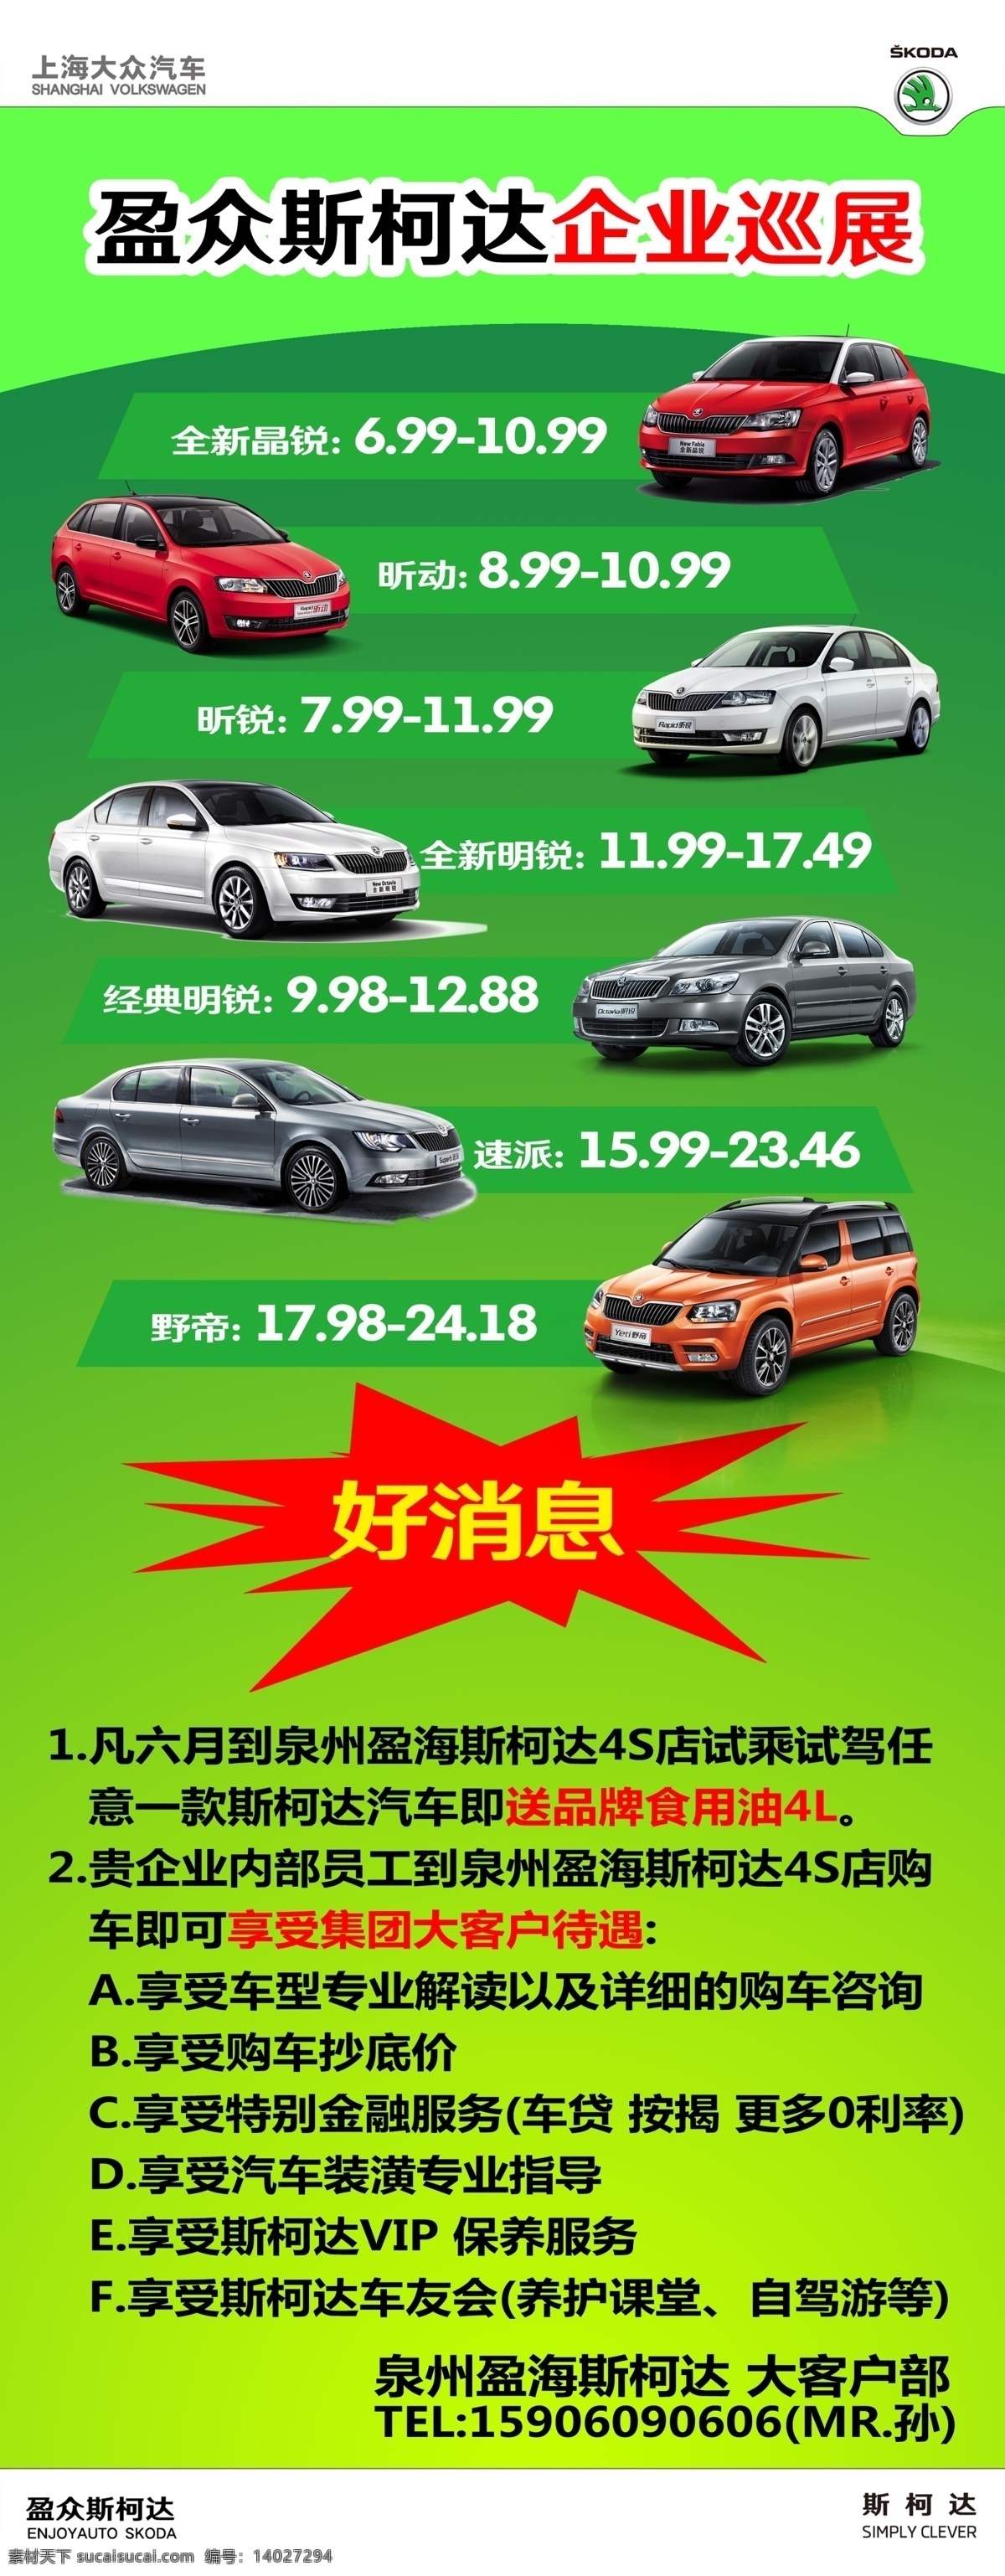 企业巡展 斯柯达车型 斯 柯达 logo 斯柯达vi 绿色背景 展板 上海大众